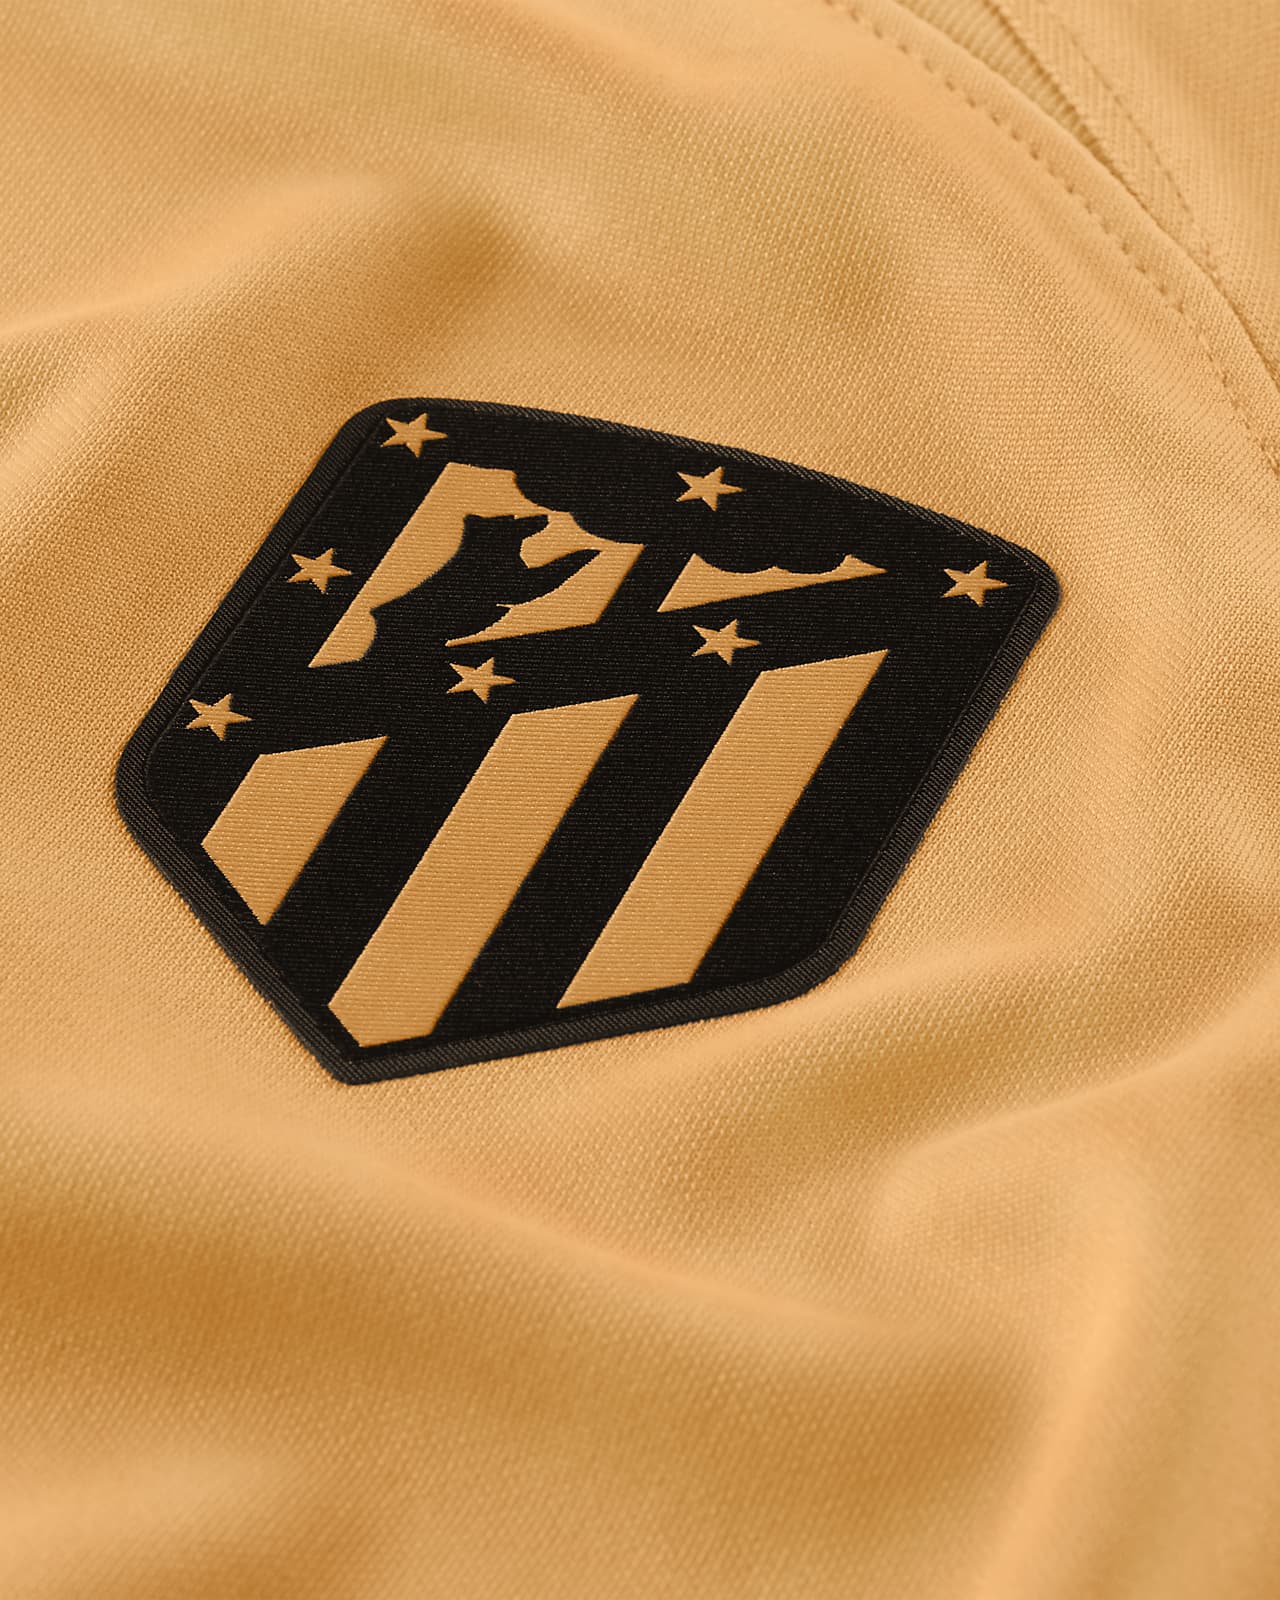 Camiseta Nike Atlético de Madrid 1a equipación Stadium